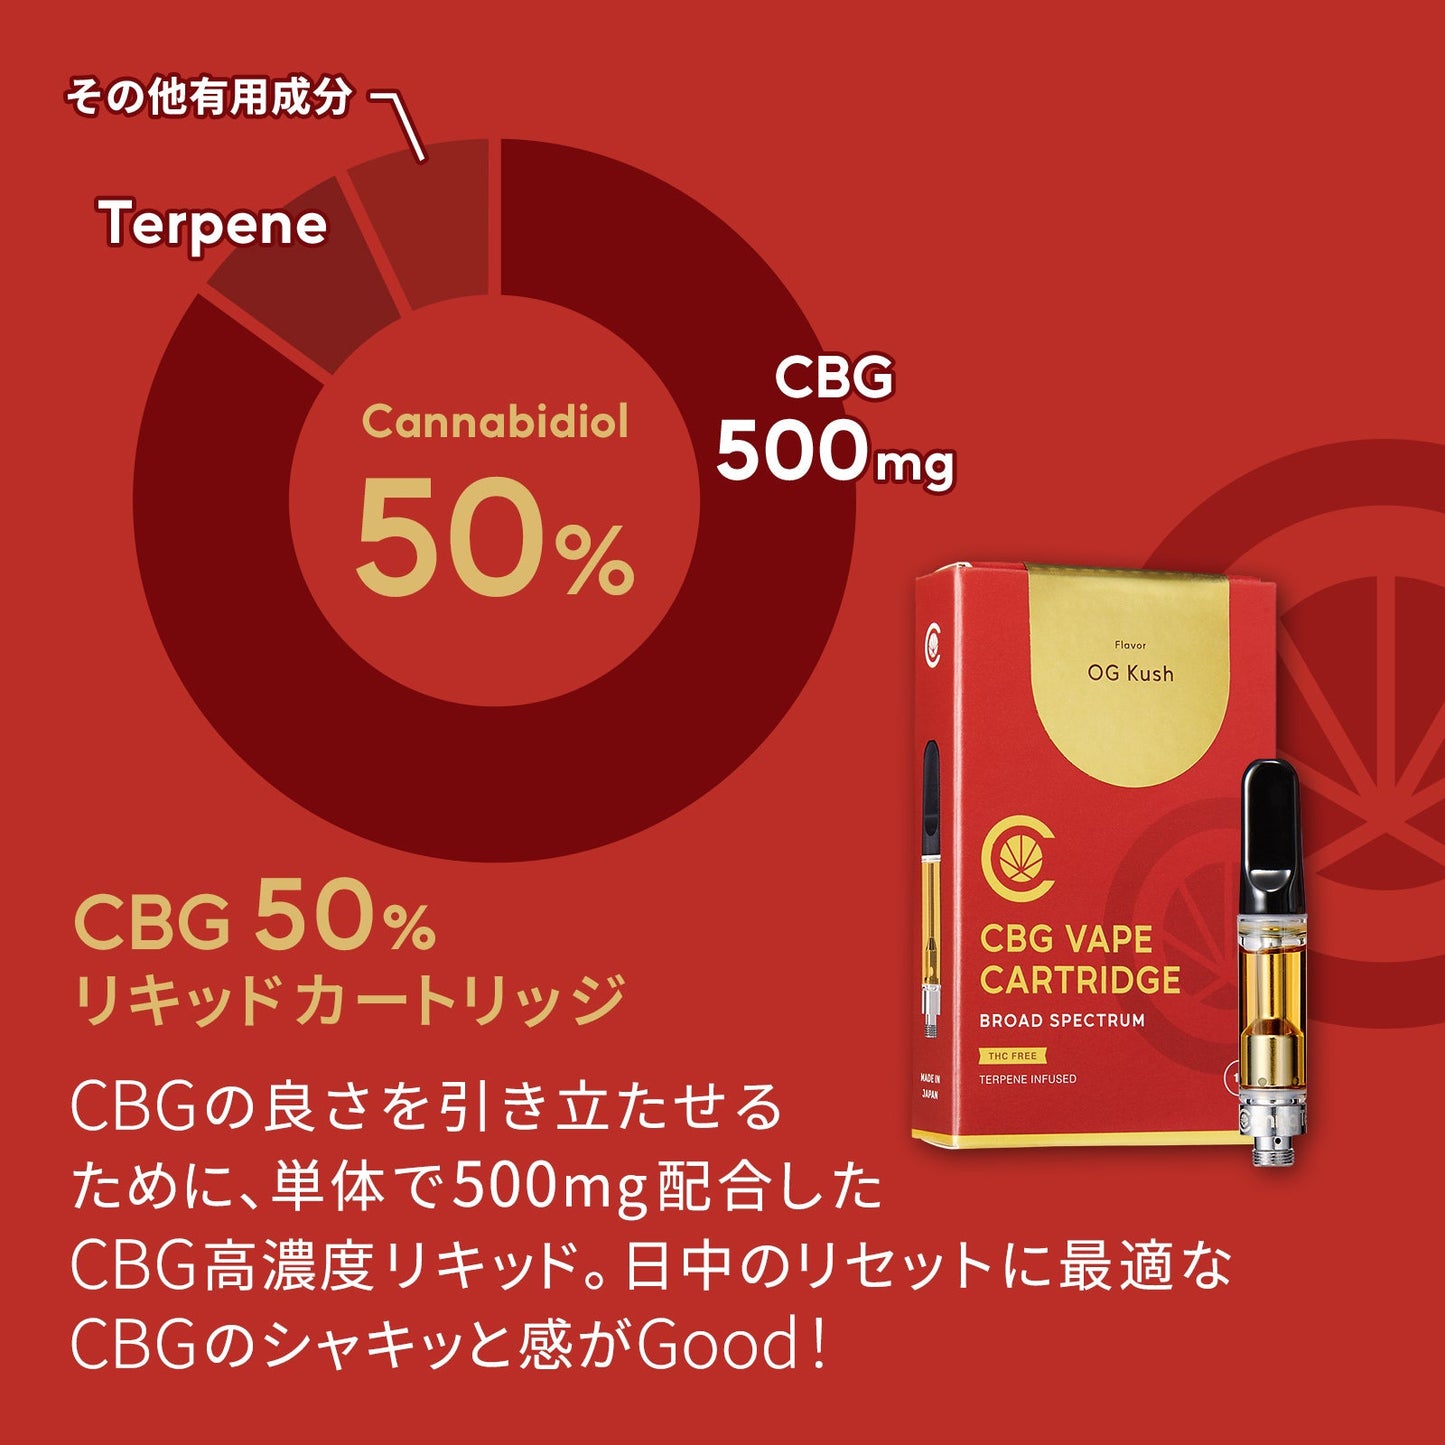 CBG リキッド 50% カートリッジ スターターセット  ( CBG500mg )